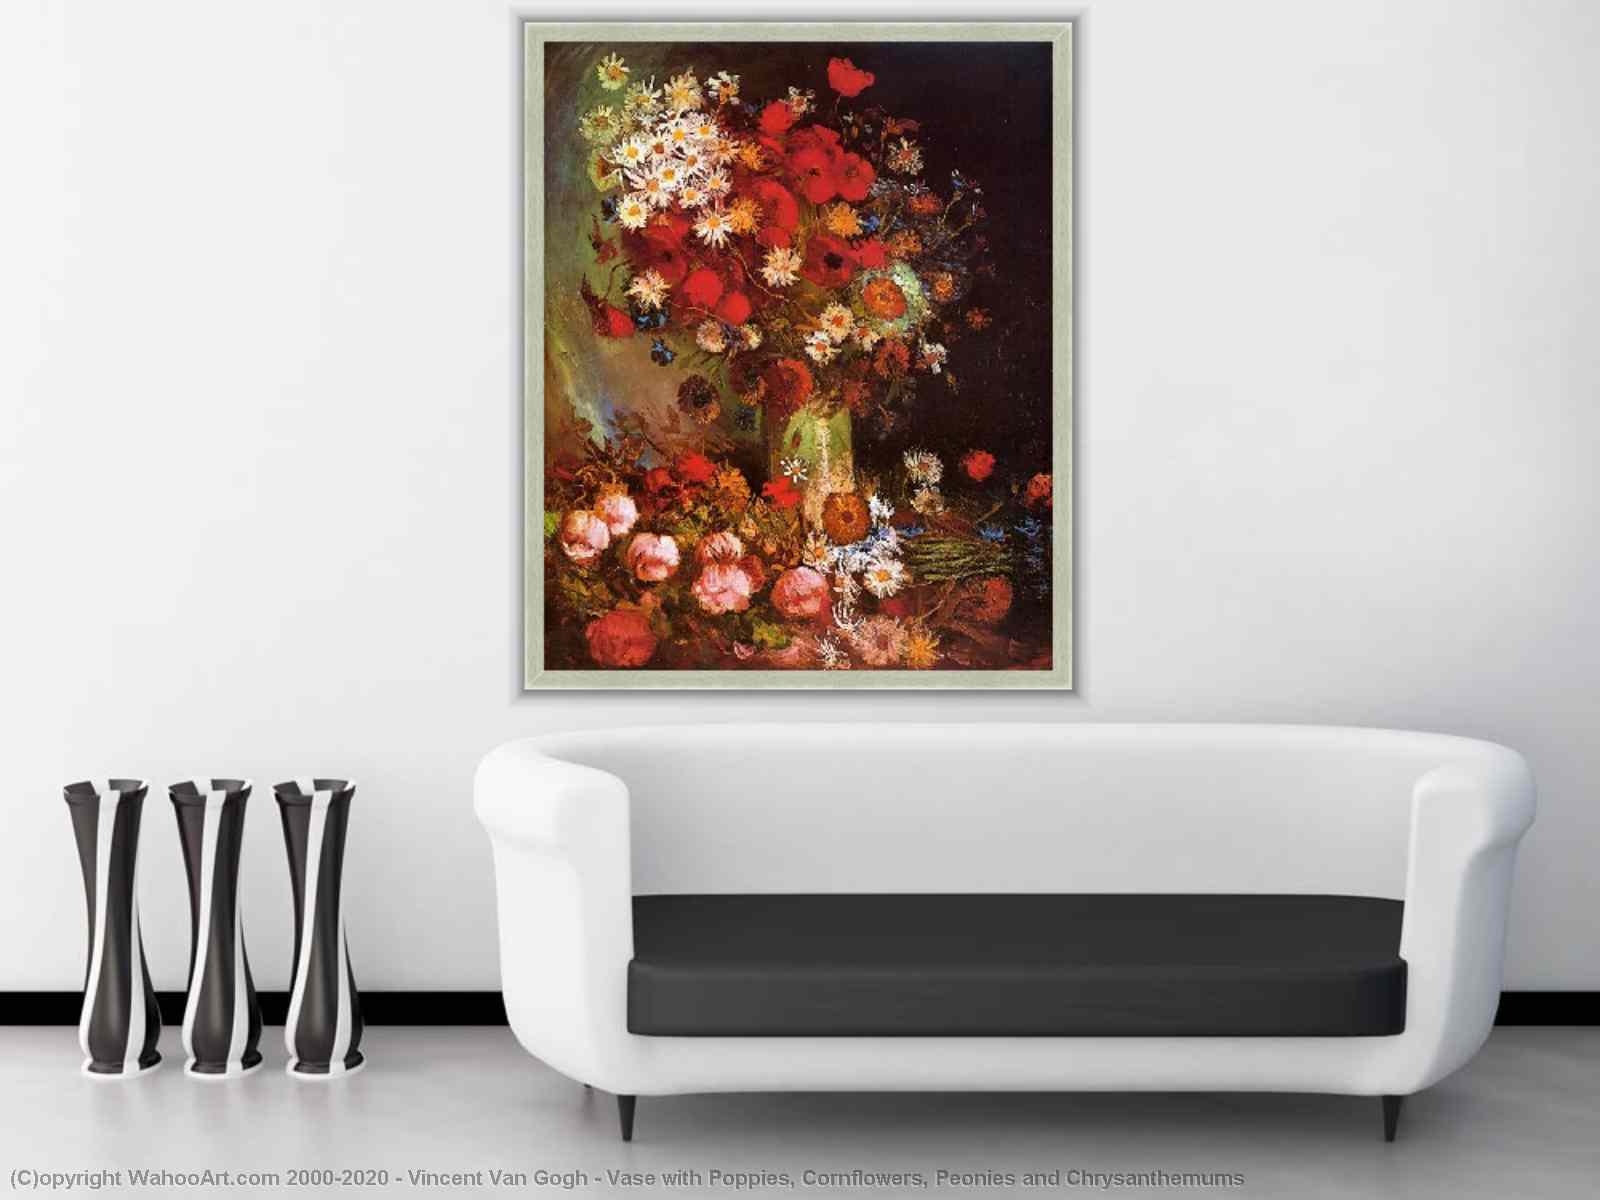 Kunstreproduktionen Vase mit Poppies, Cornflowers, Peonies und